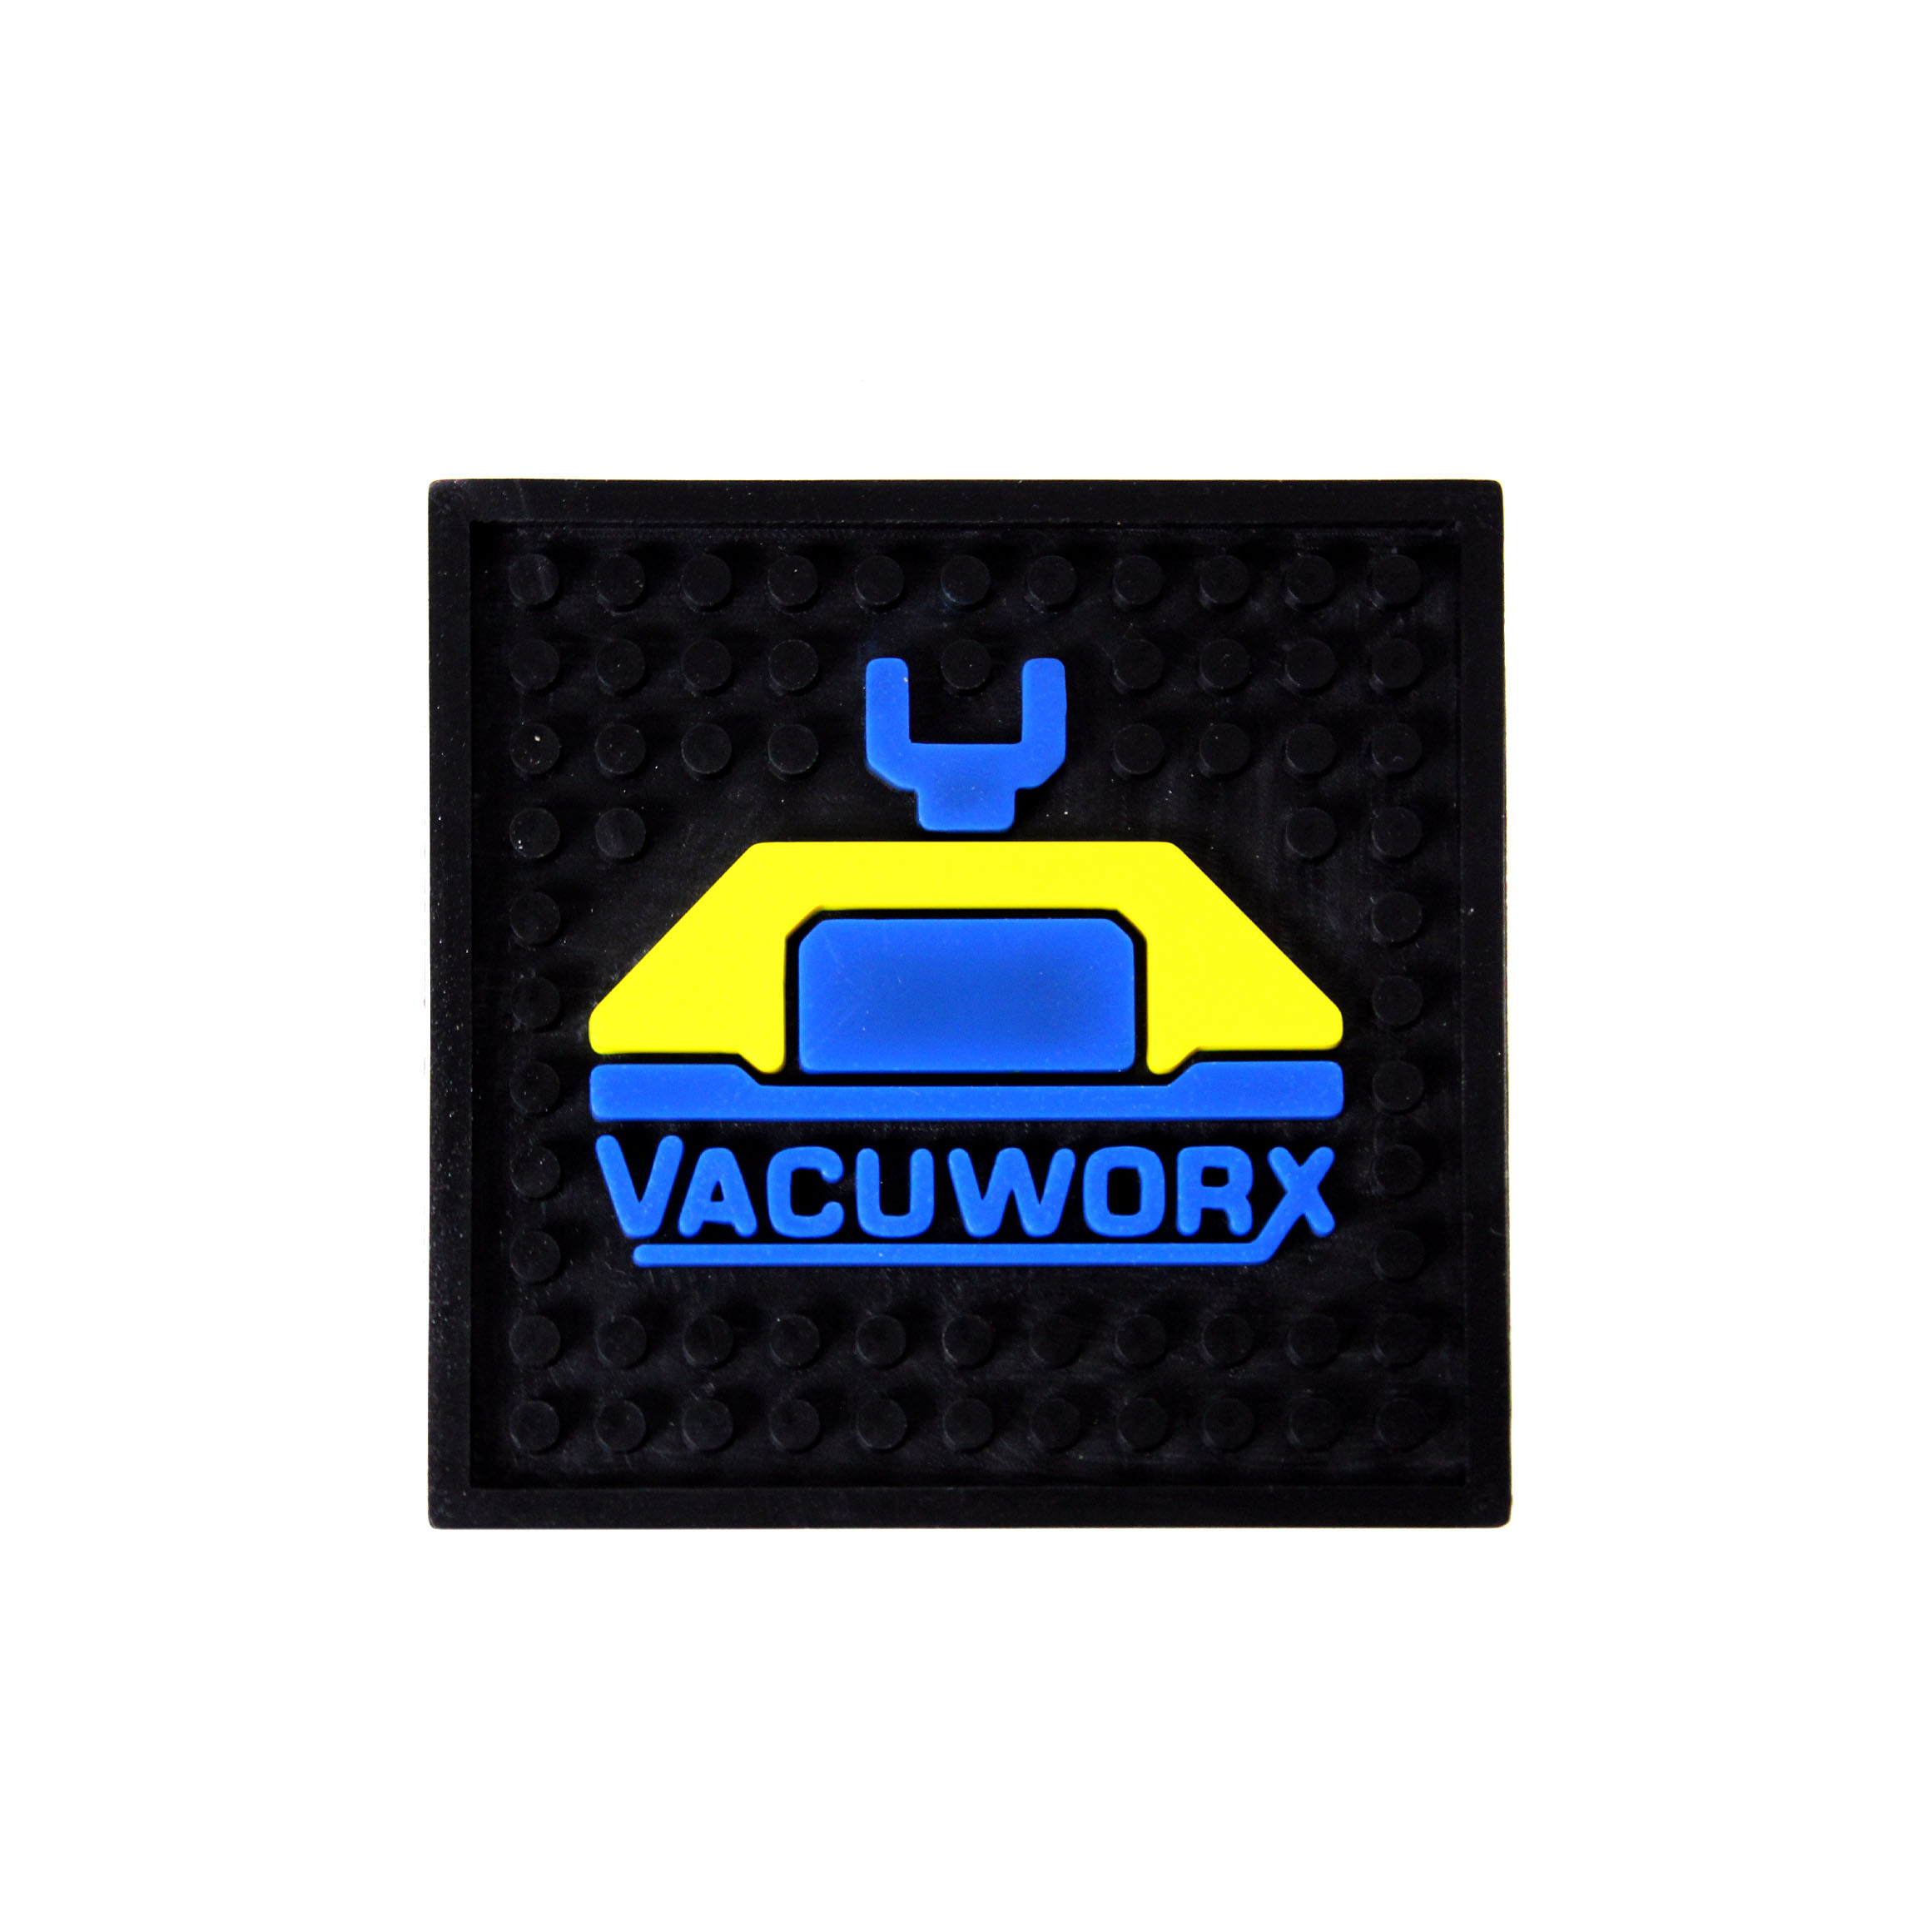 Vacuworx Coaster